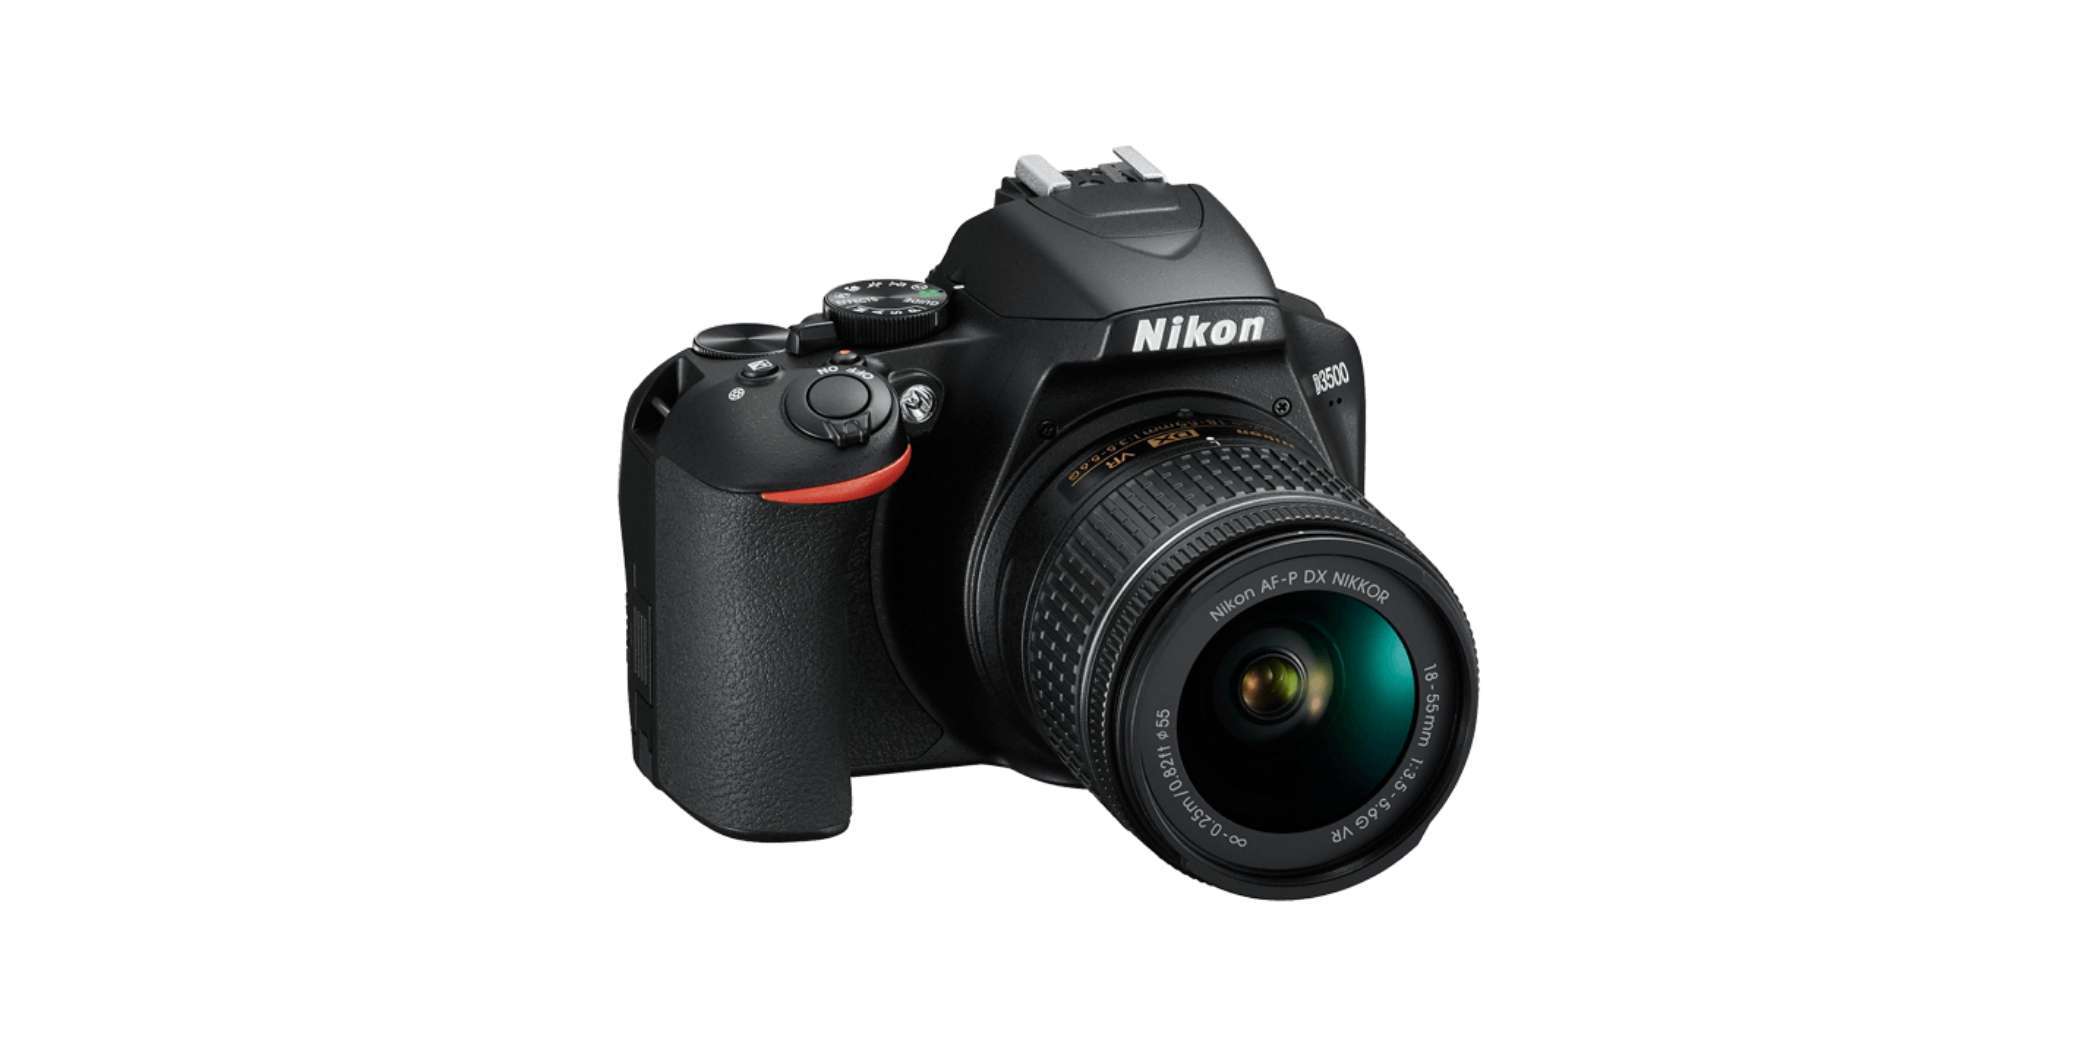 Nikon D3500 18-55mm